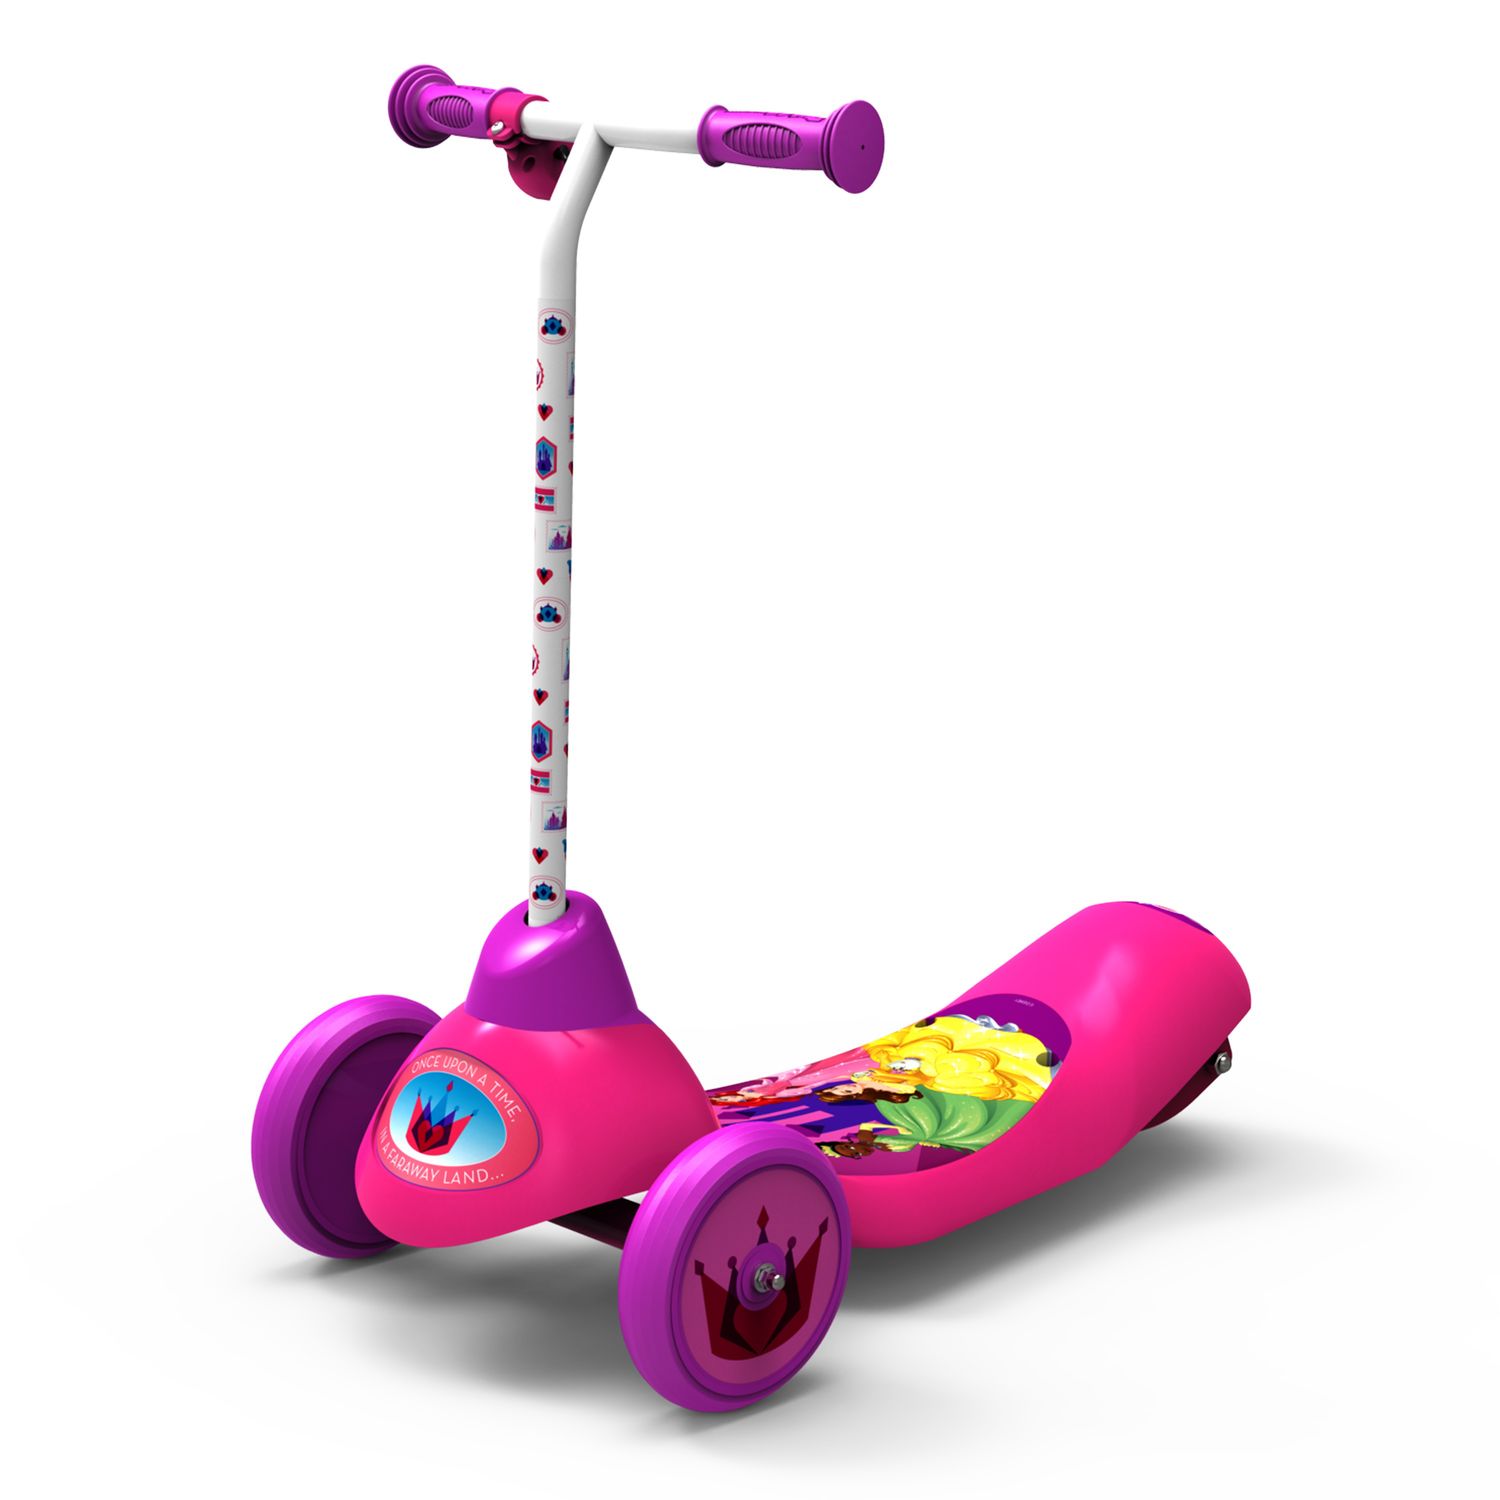 princess motorized scooter